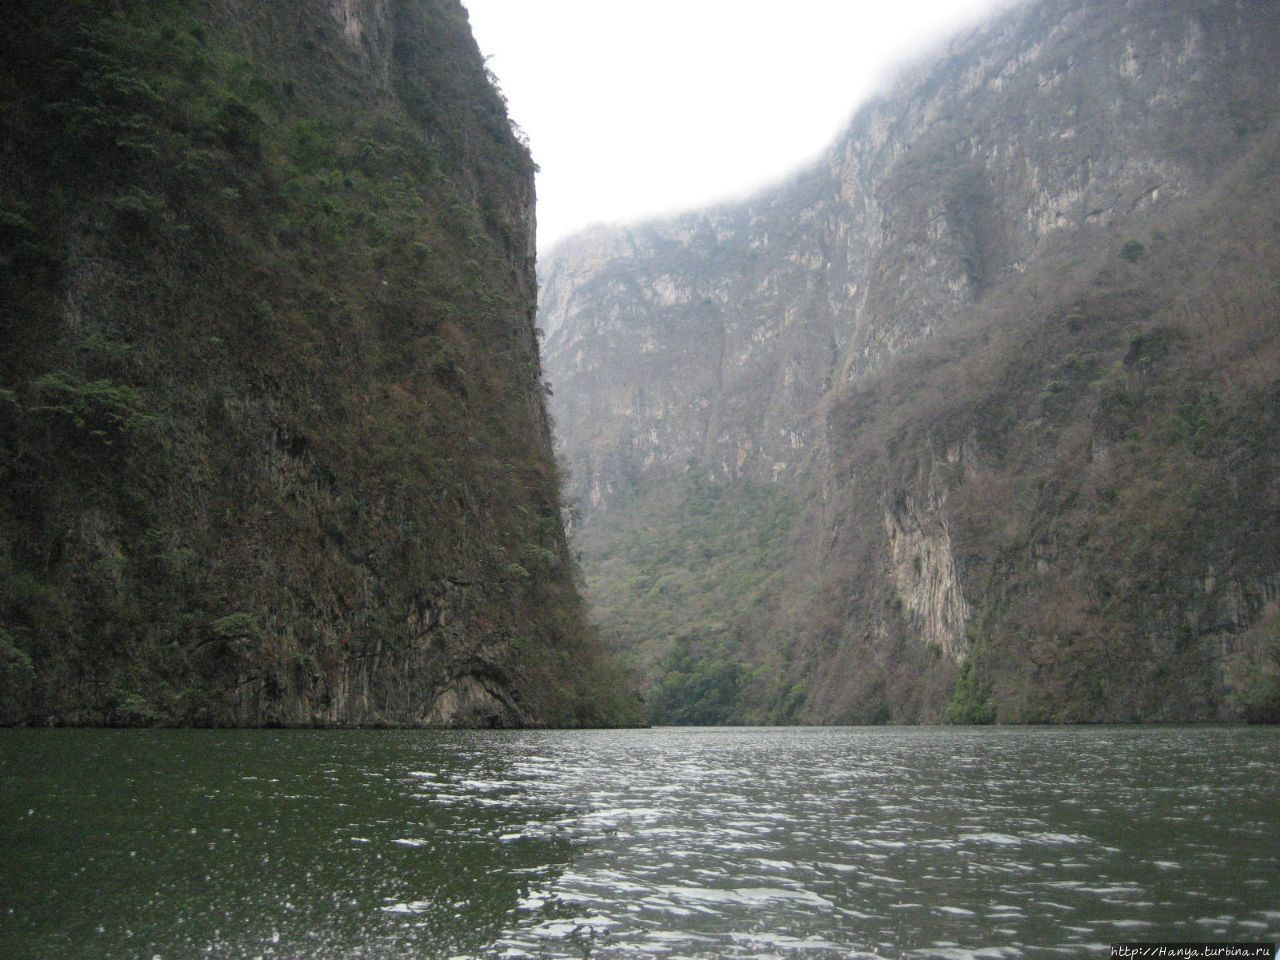 Каньон дель Сумидеро Чьяпа-де-Корсо, Мексика